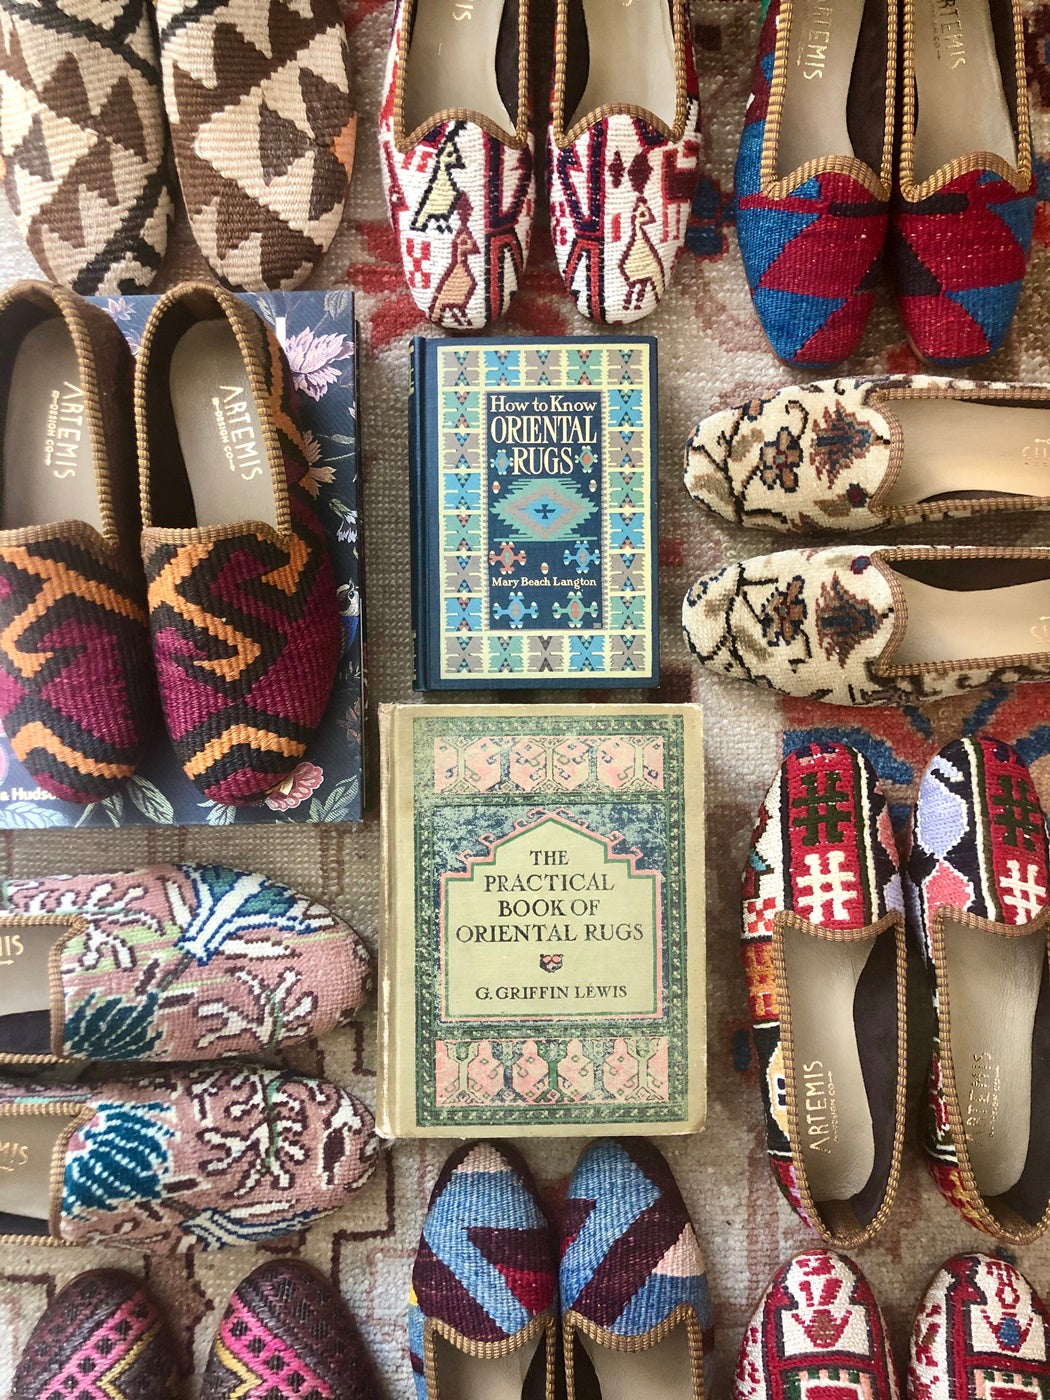 kilim shoes arranged around antique books about textile art